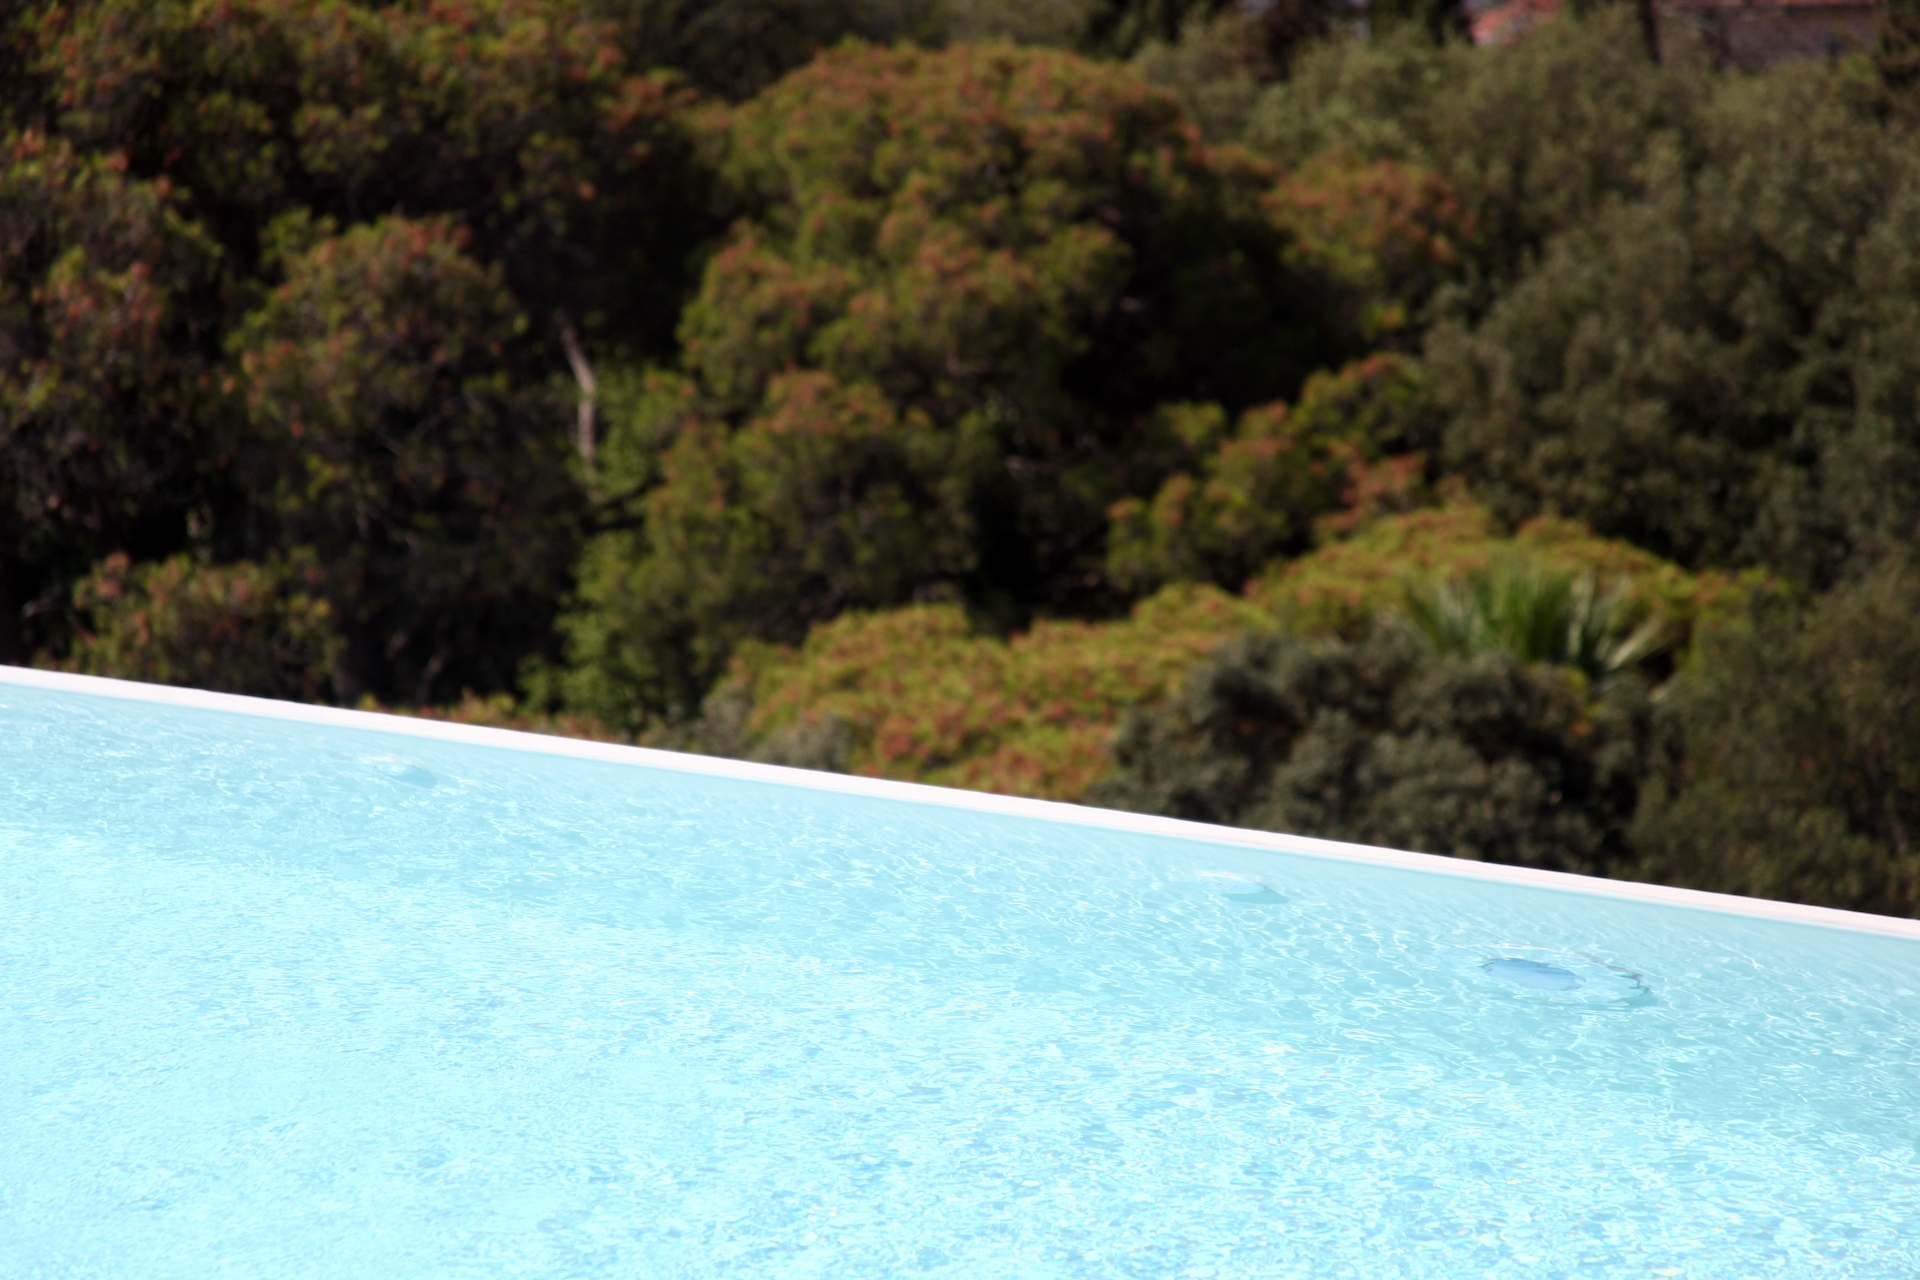 piscina a sfioro arredo di lusso contract per Hotel Salina di Taranto realizzato dal Gruppo Rodi